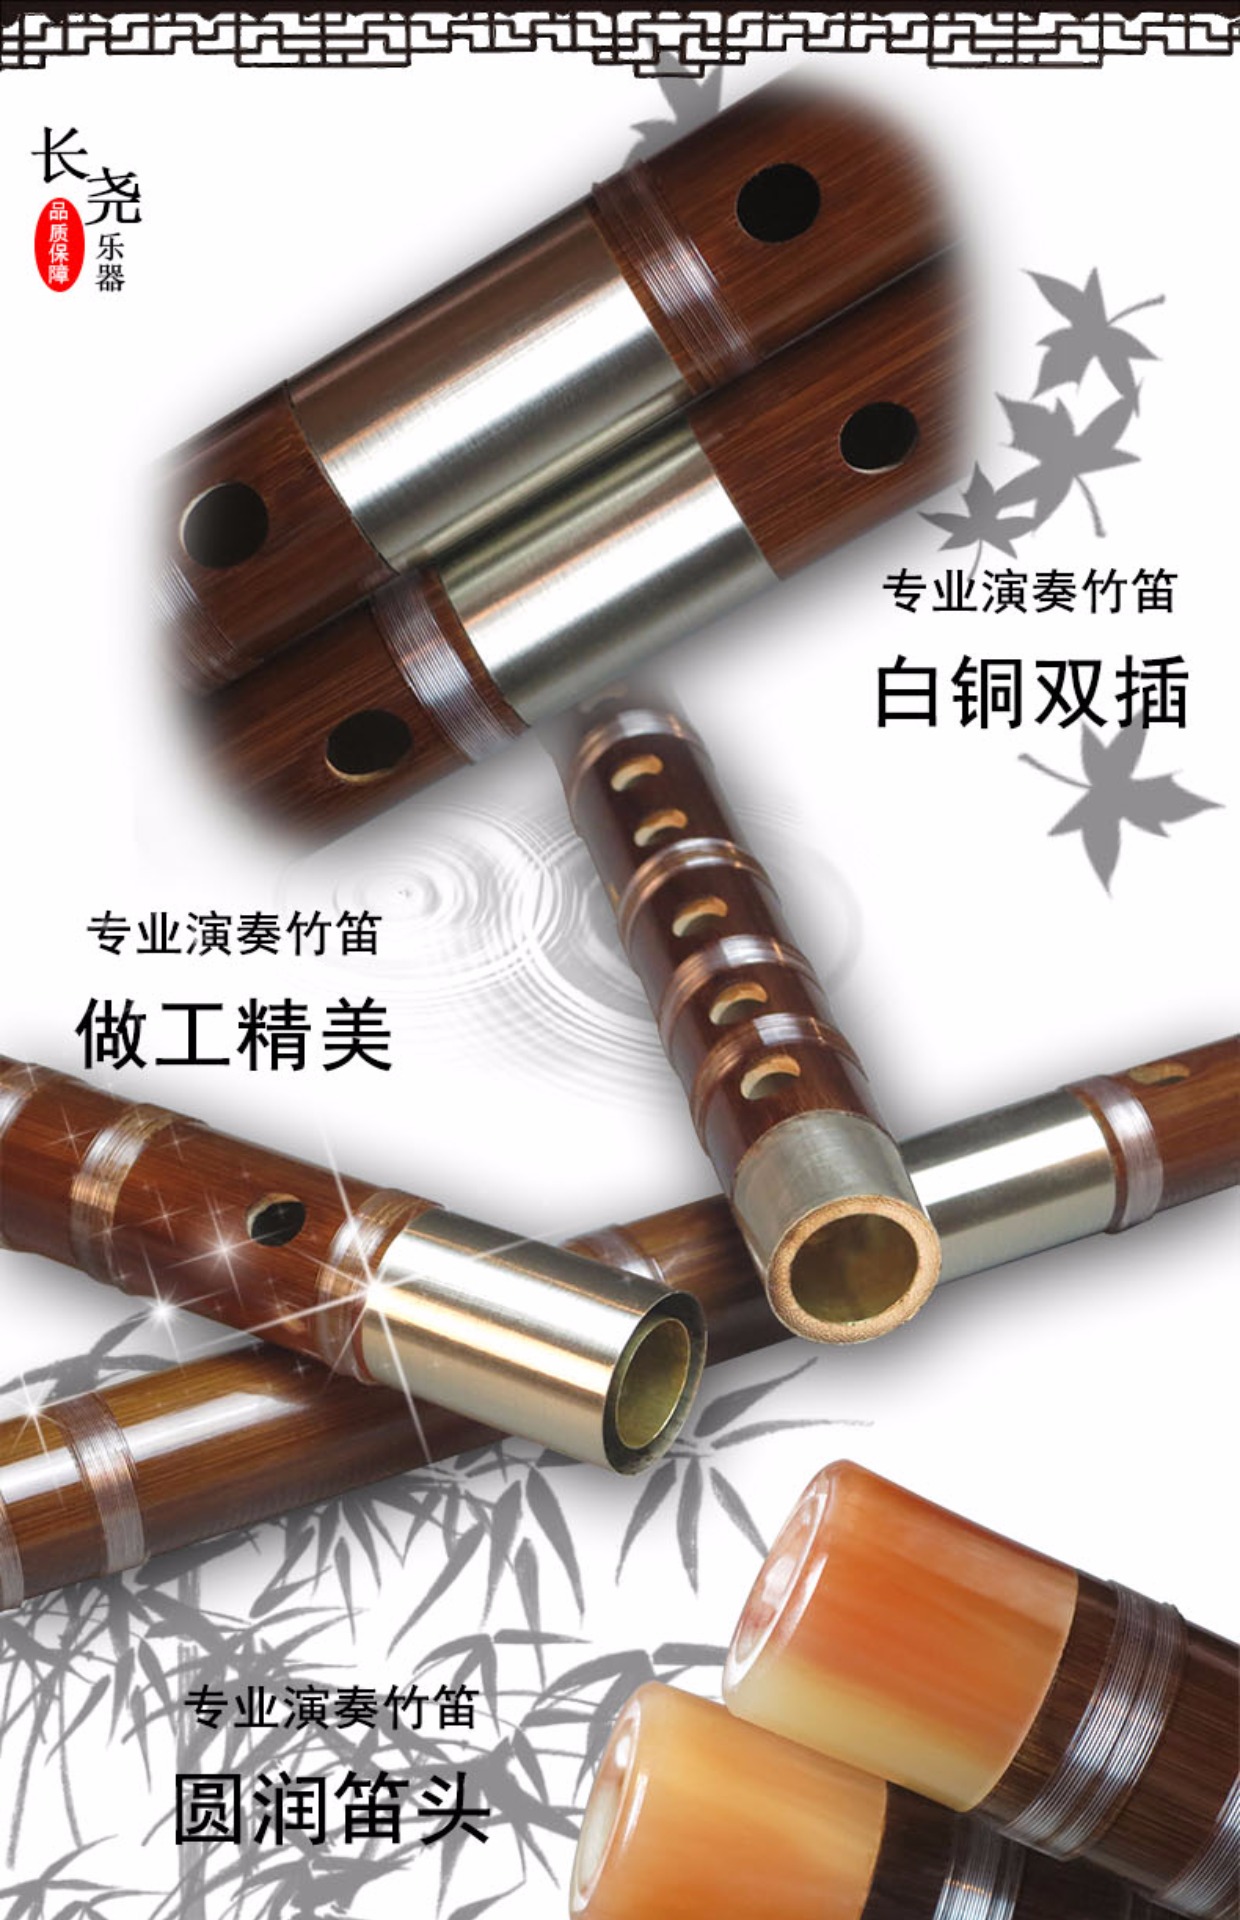 Sáo trúc đắng mới và cũ thổi sáo chuyên nghiệp luyện tập học nhạc cụ sáo trúc sáo trúc khúc tặng sáo trúc đa dạng sản phẩm sáo - Nhạc cụ dân tộc